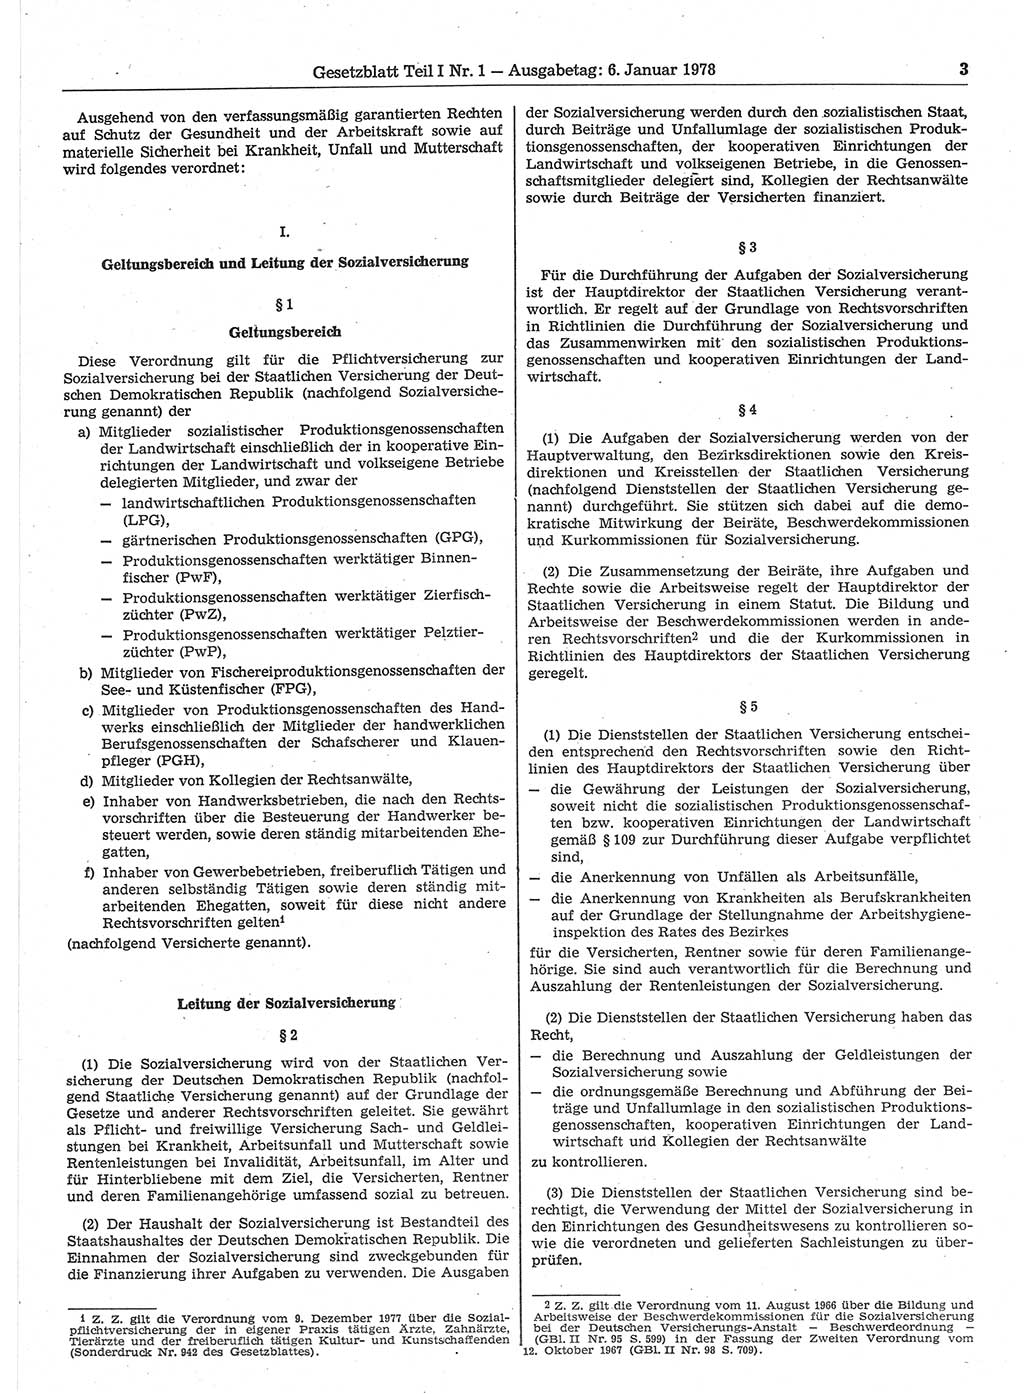 Gesetzblatt (GBl.) der Deutschen Demokratischen Republik (DDR) Teil Ⅰ 1978, Seite 3 (GBl. DDR Ⅰ 1978, S. 3)